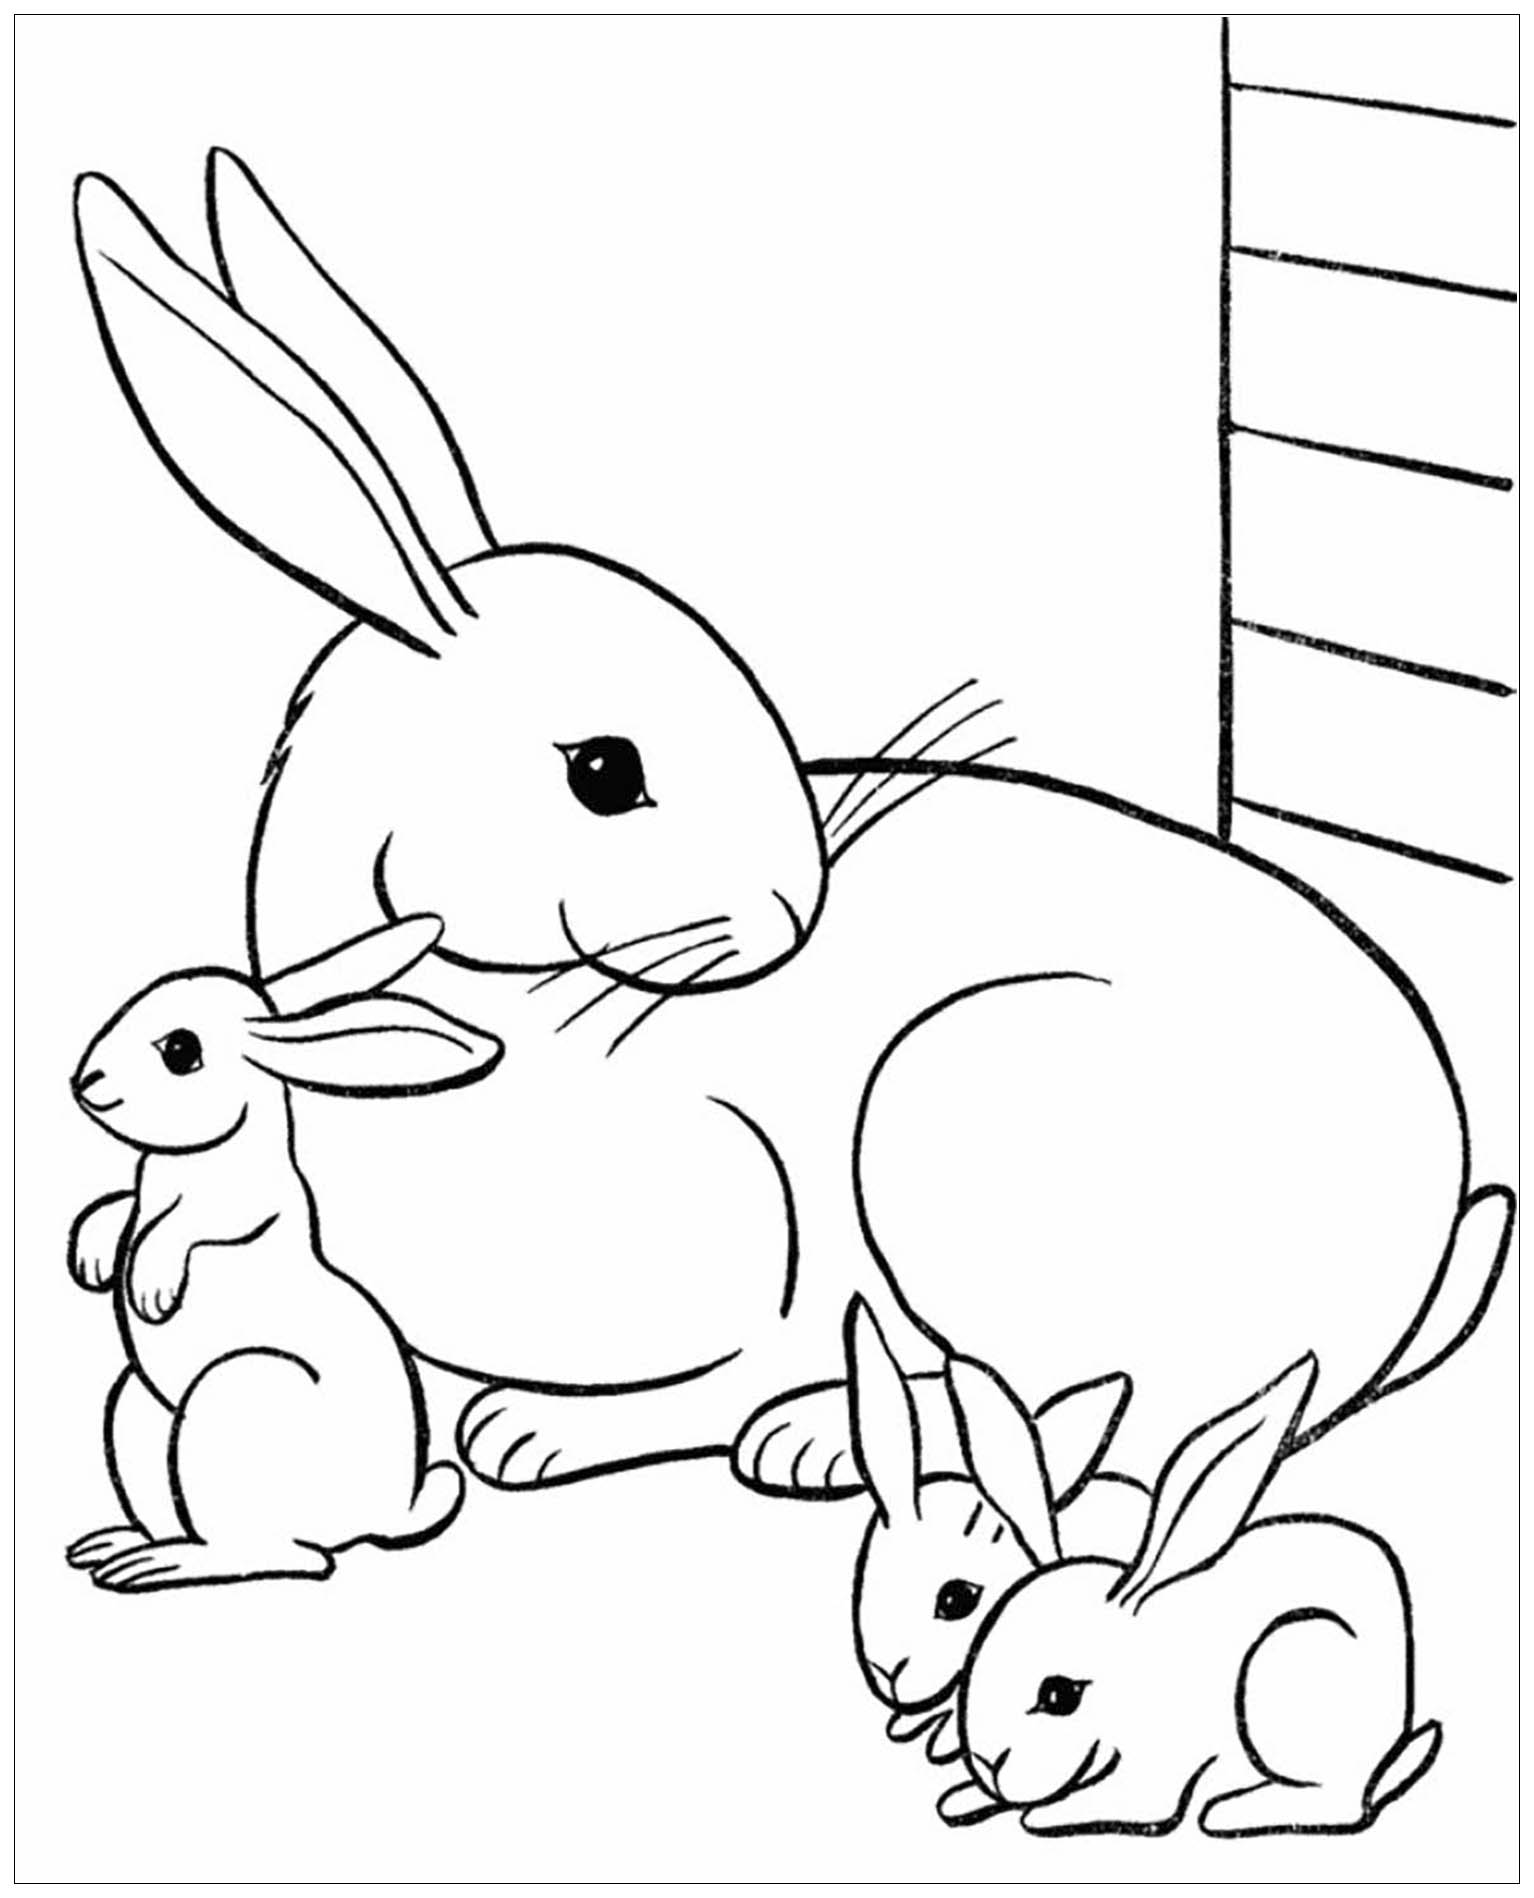 Prepara tus lápices y rotuladores para colorear este libro para colorear de Conejo